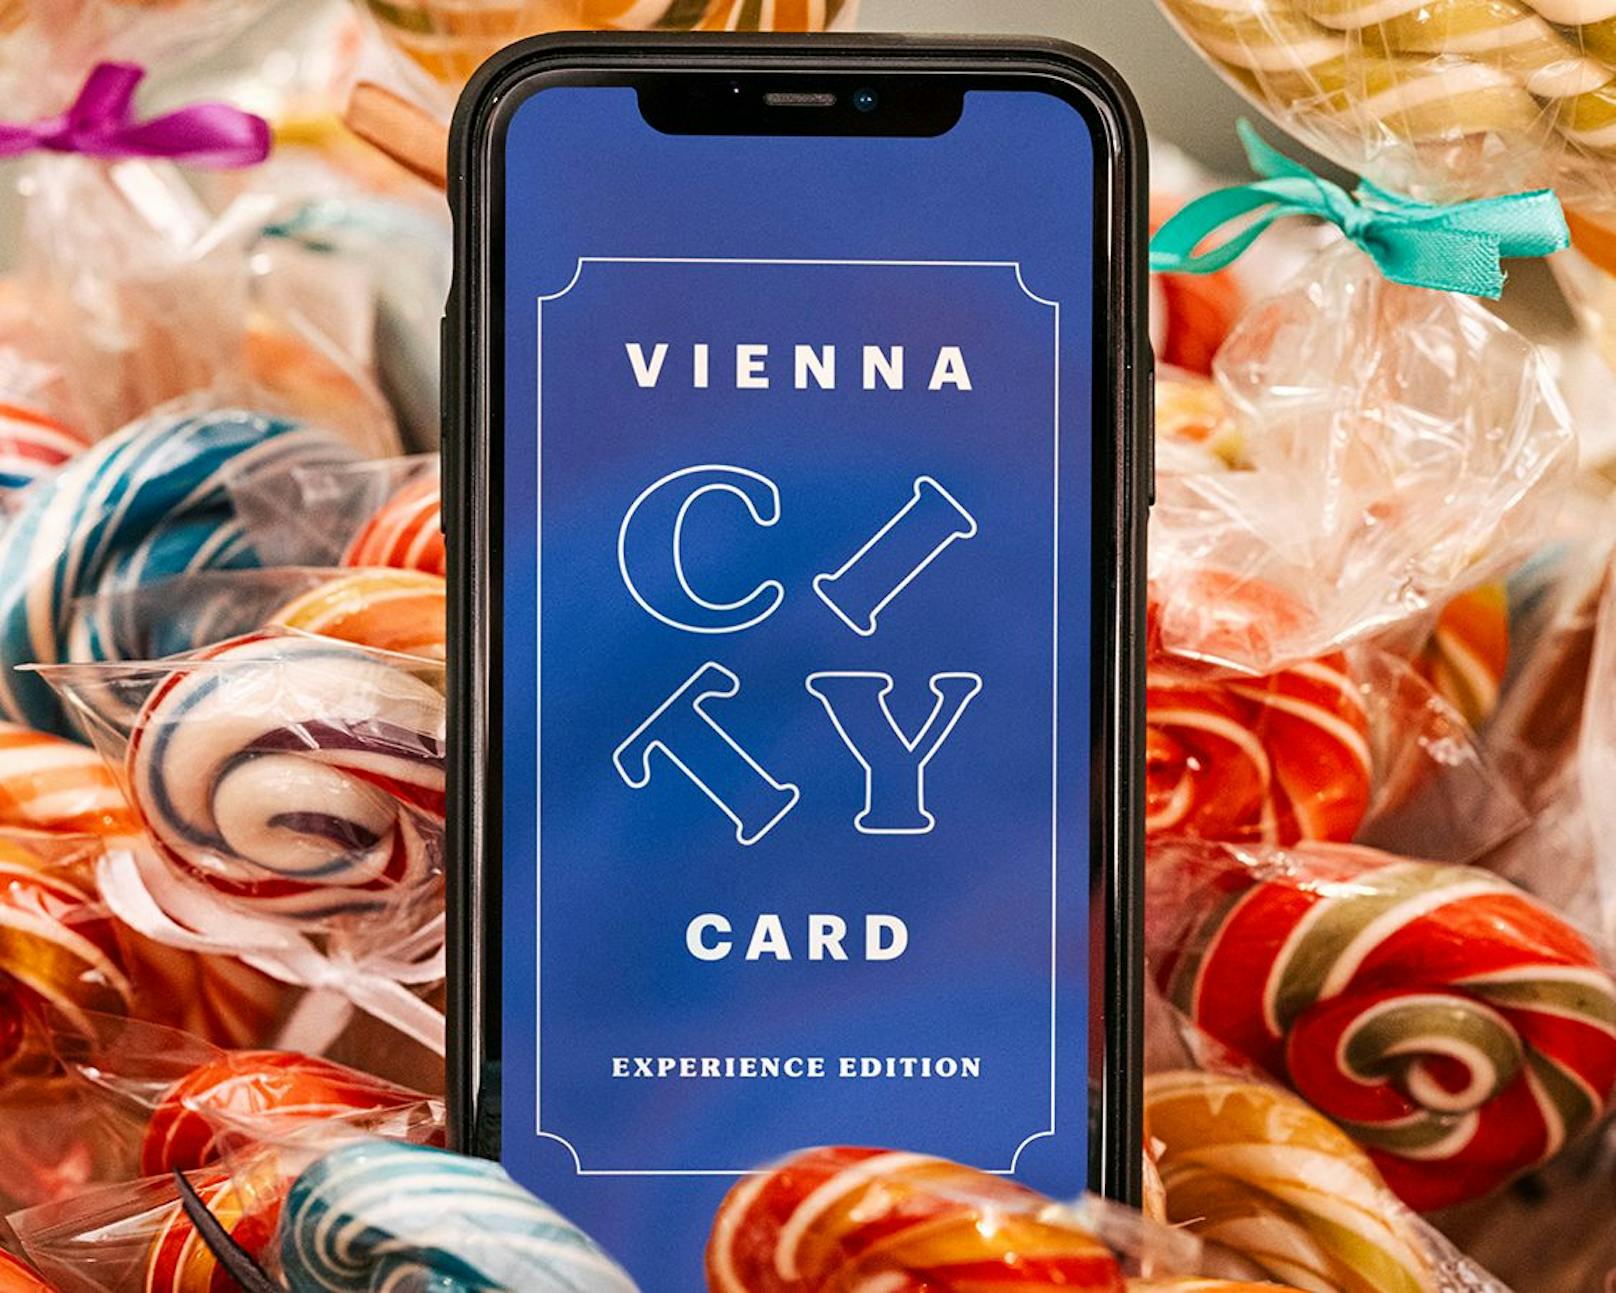 Die ÖVP Wien will Gratis-Vienna City Cards für Wientouristen. Damit soll die lokale Wirtschaft in der Coronakrise gestärkt werden.